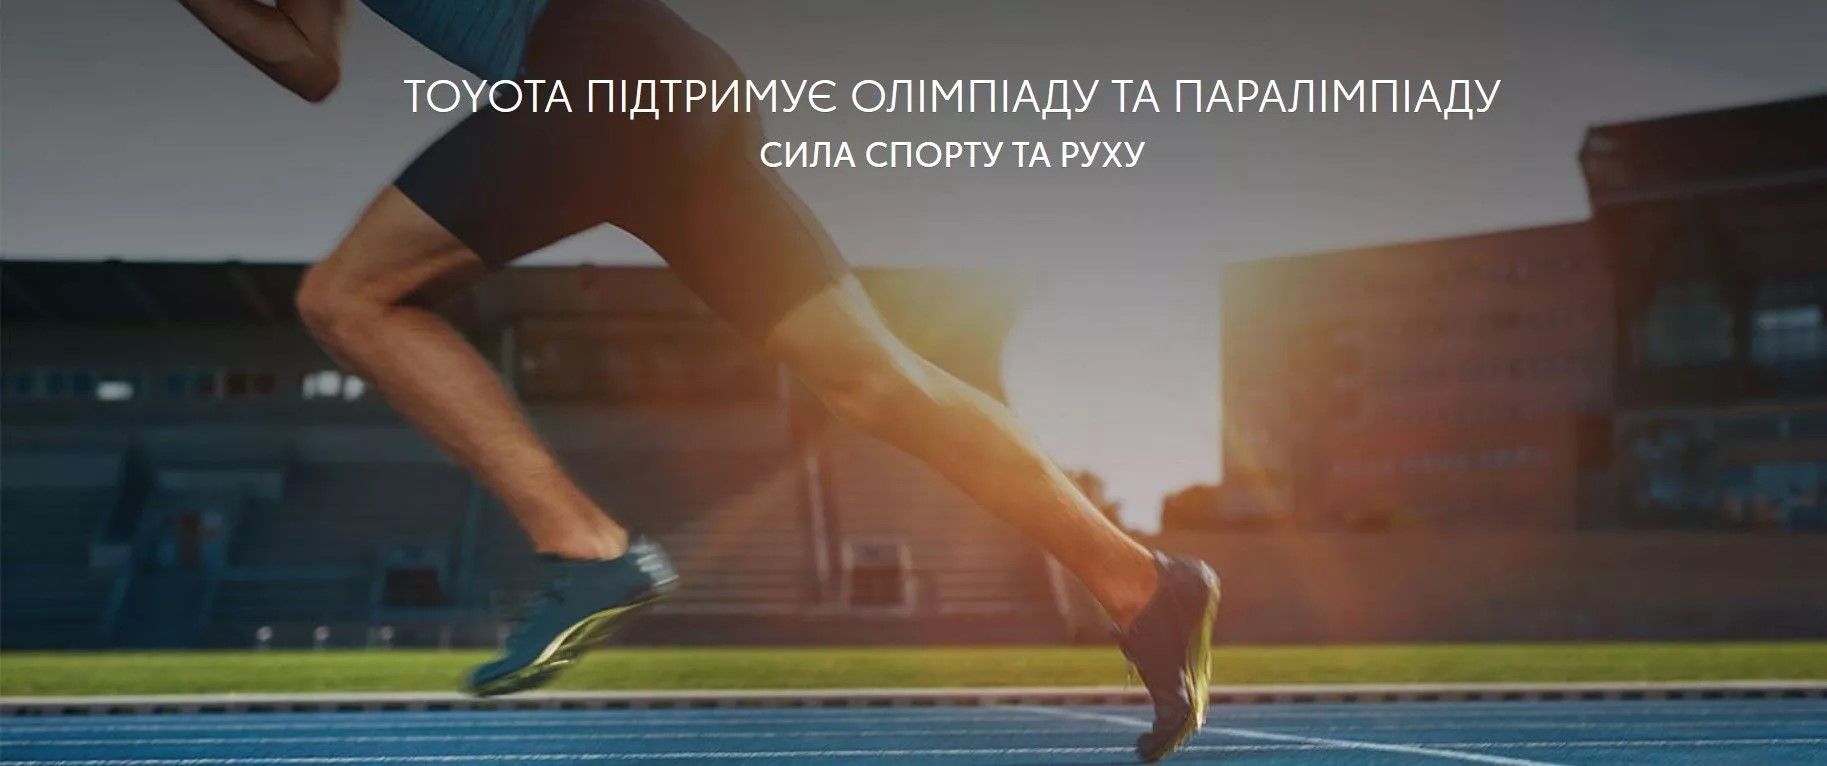 olimpijs_ke_partnerstvo_tojota_uzgorod